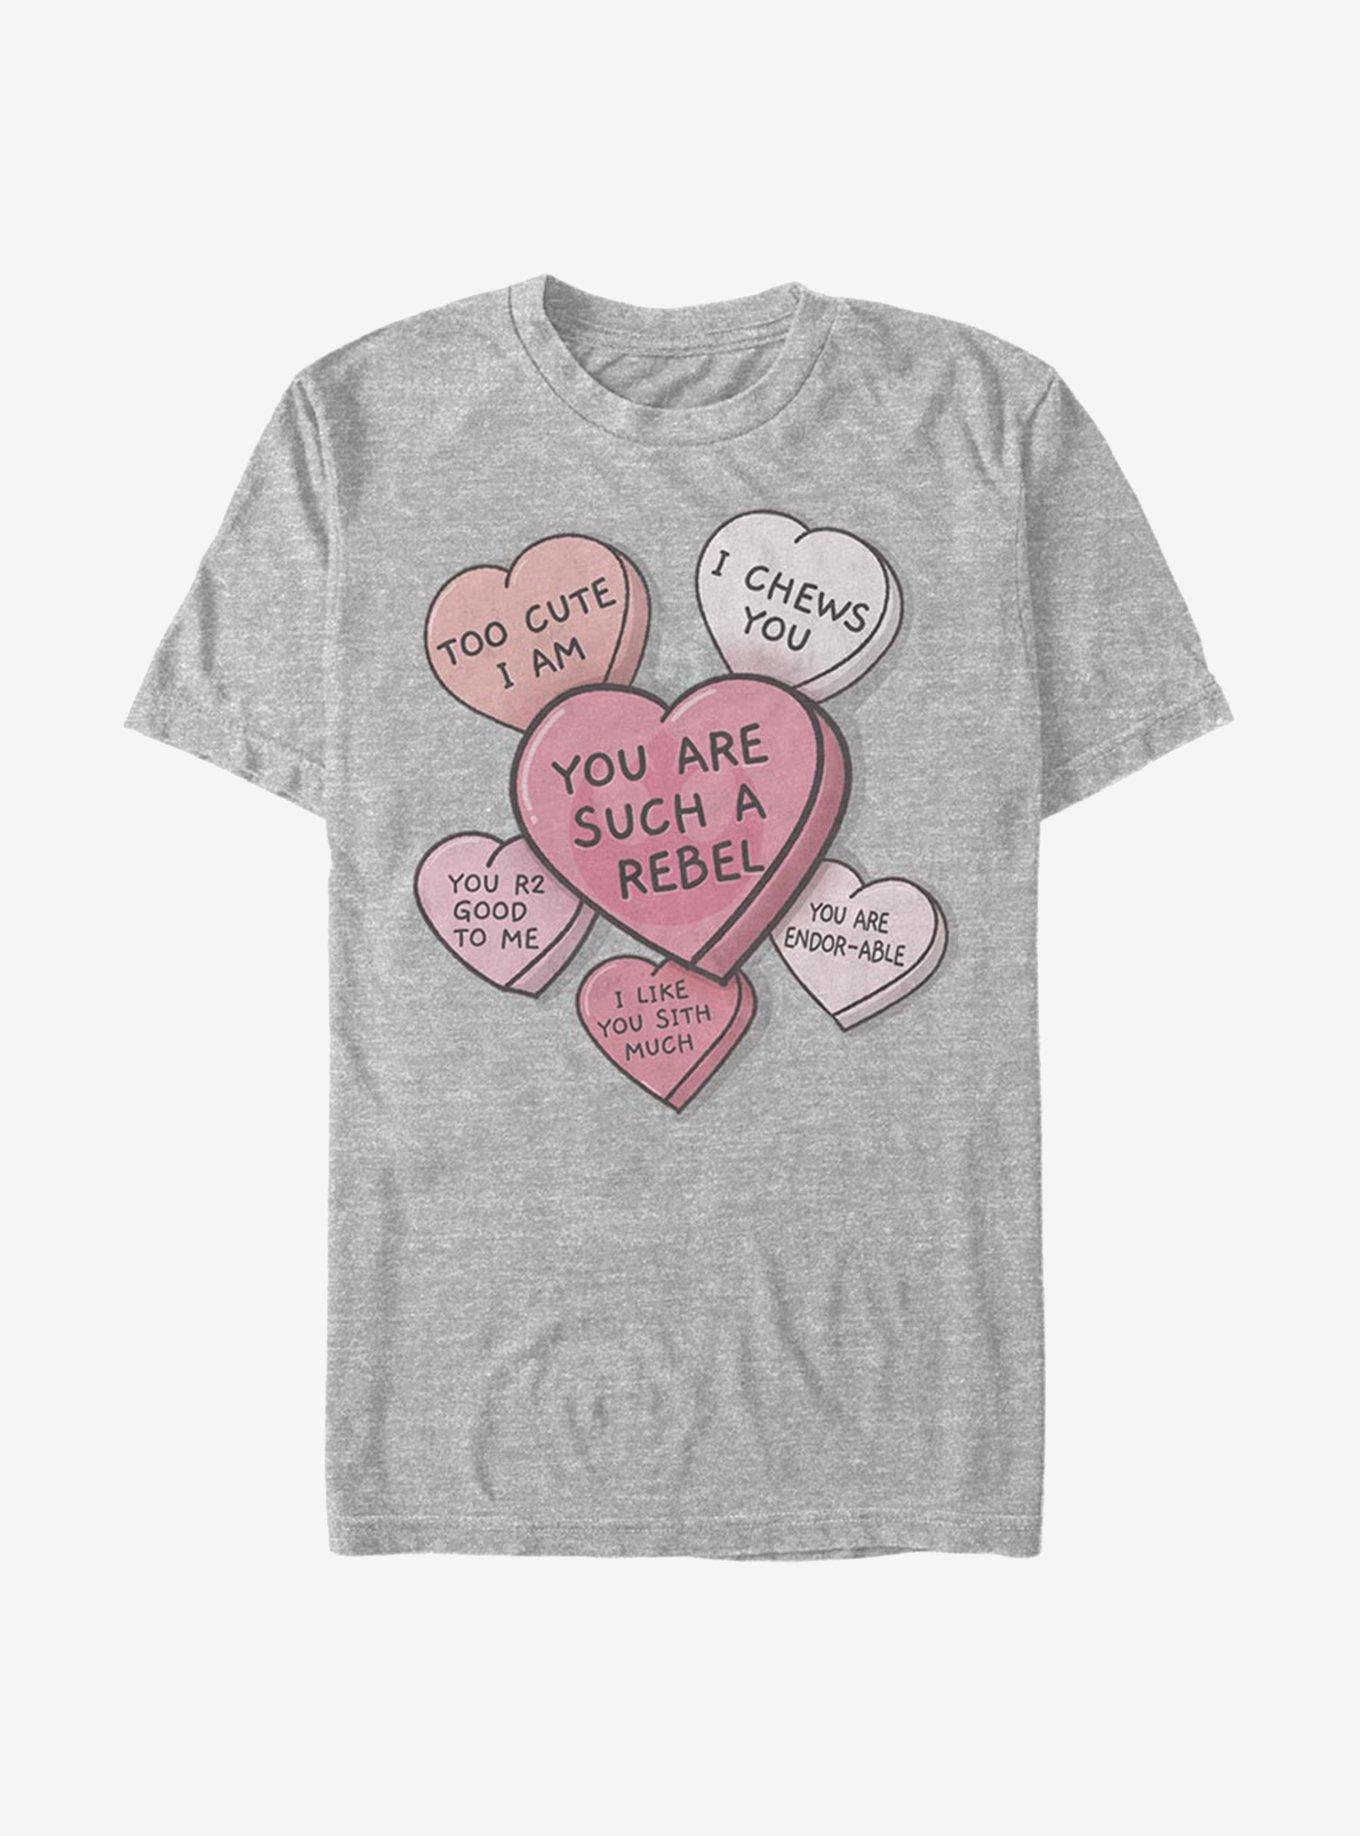 Star Wars Candy Hearts T-Shirt, , hi-res